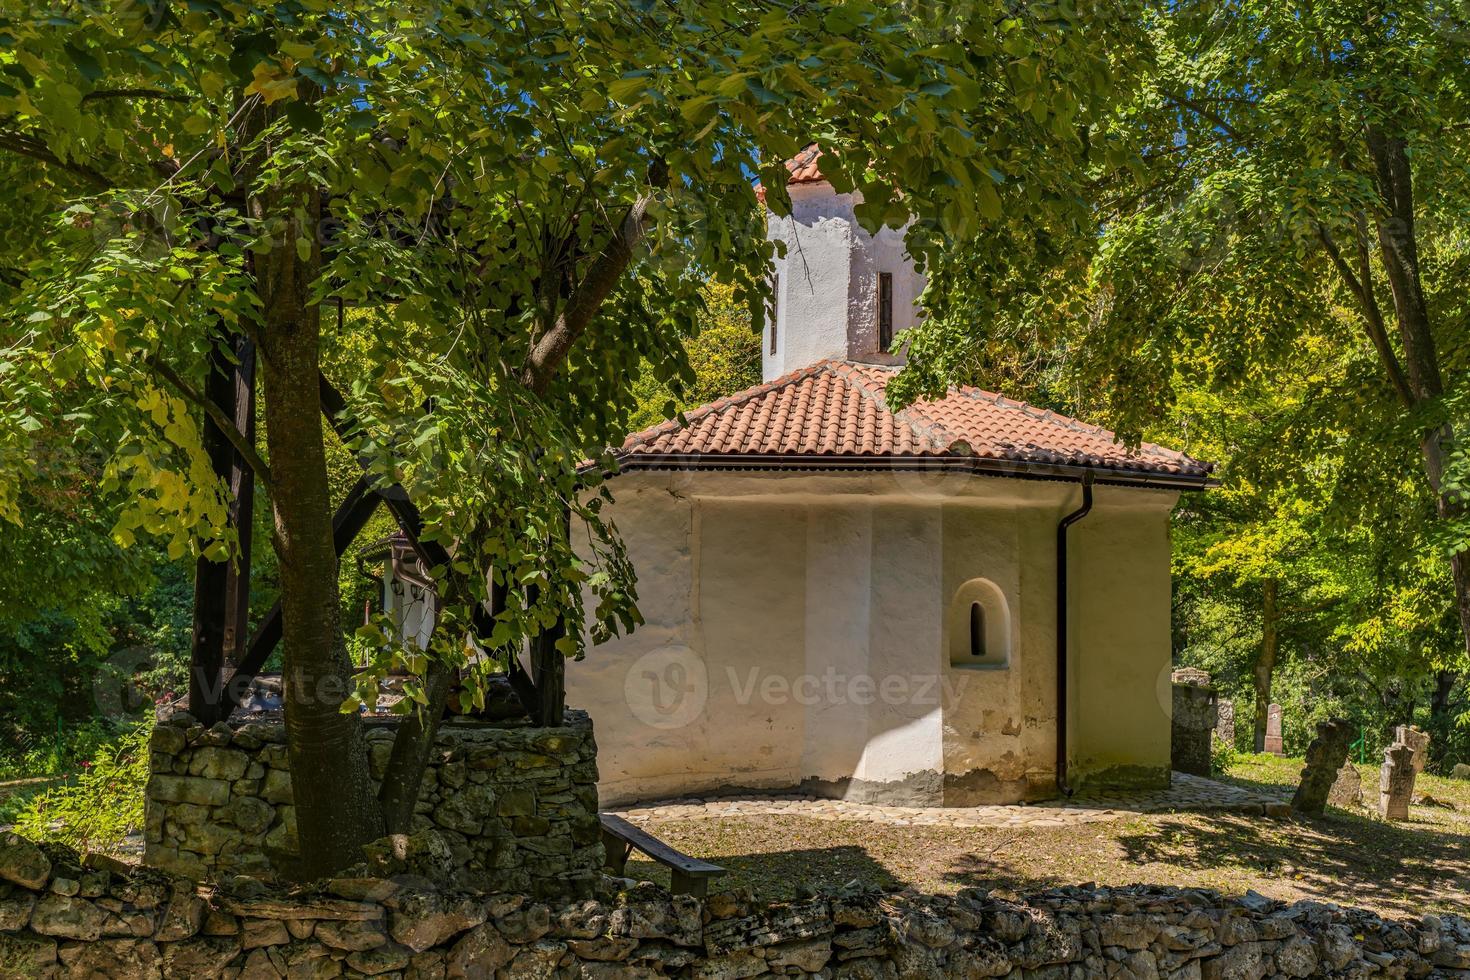 klooster van peter en paul in grliste, servië foto